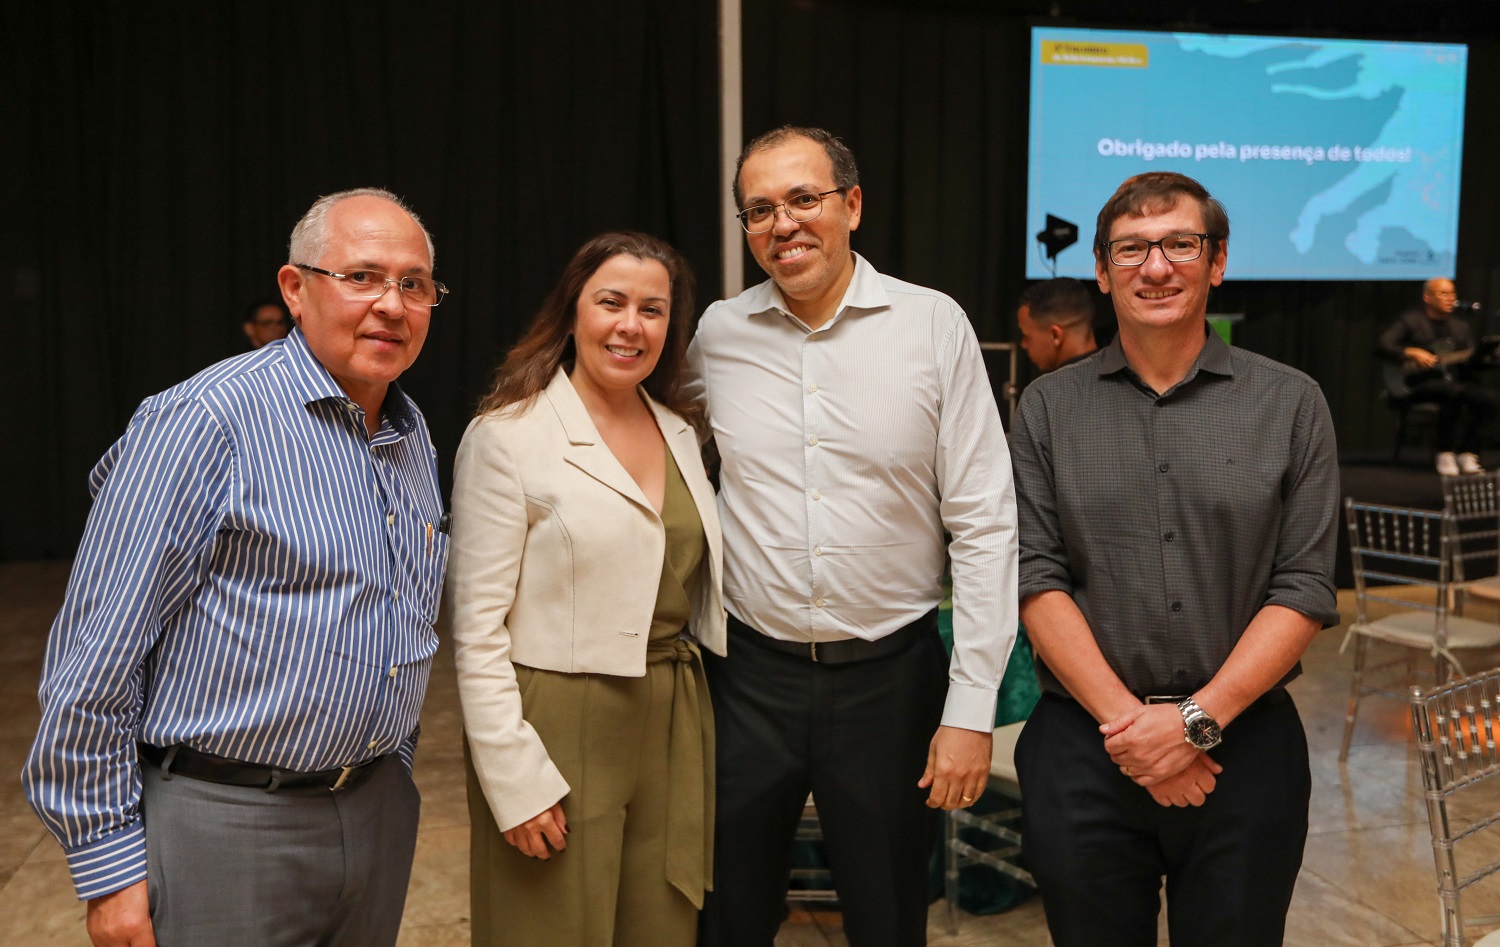  Dr Rosenbert Mamedio, Dra Andréa Karoline, Dr Luiz Claudio Félix e Dr Paulo Adriano Leão              